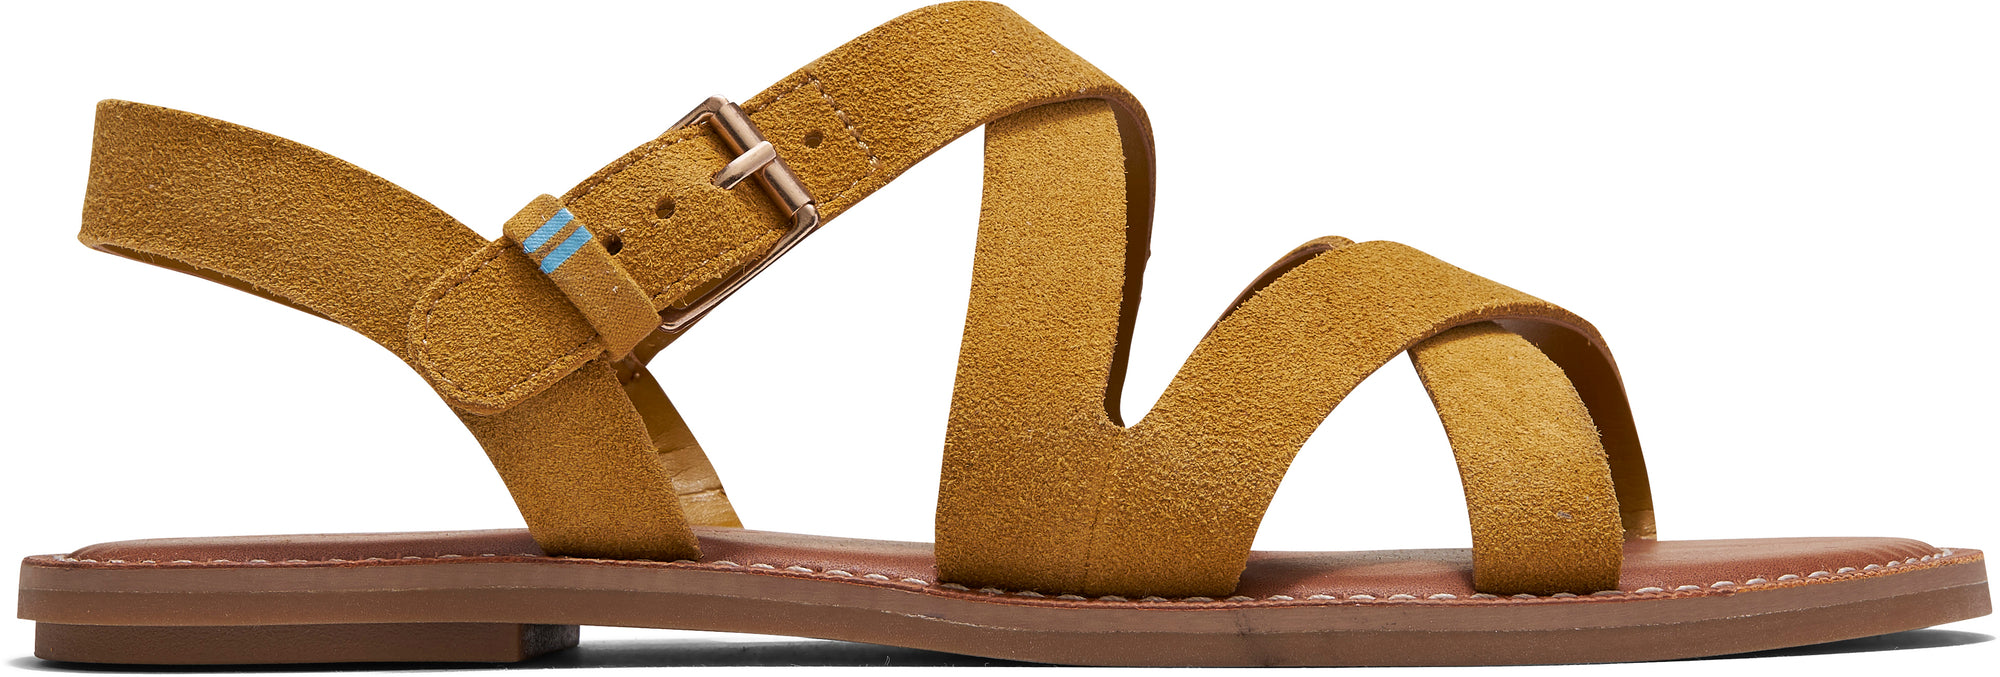 Dámské žluté semišové sandálky TOMS Sicily